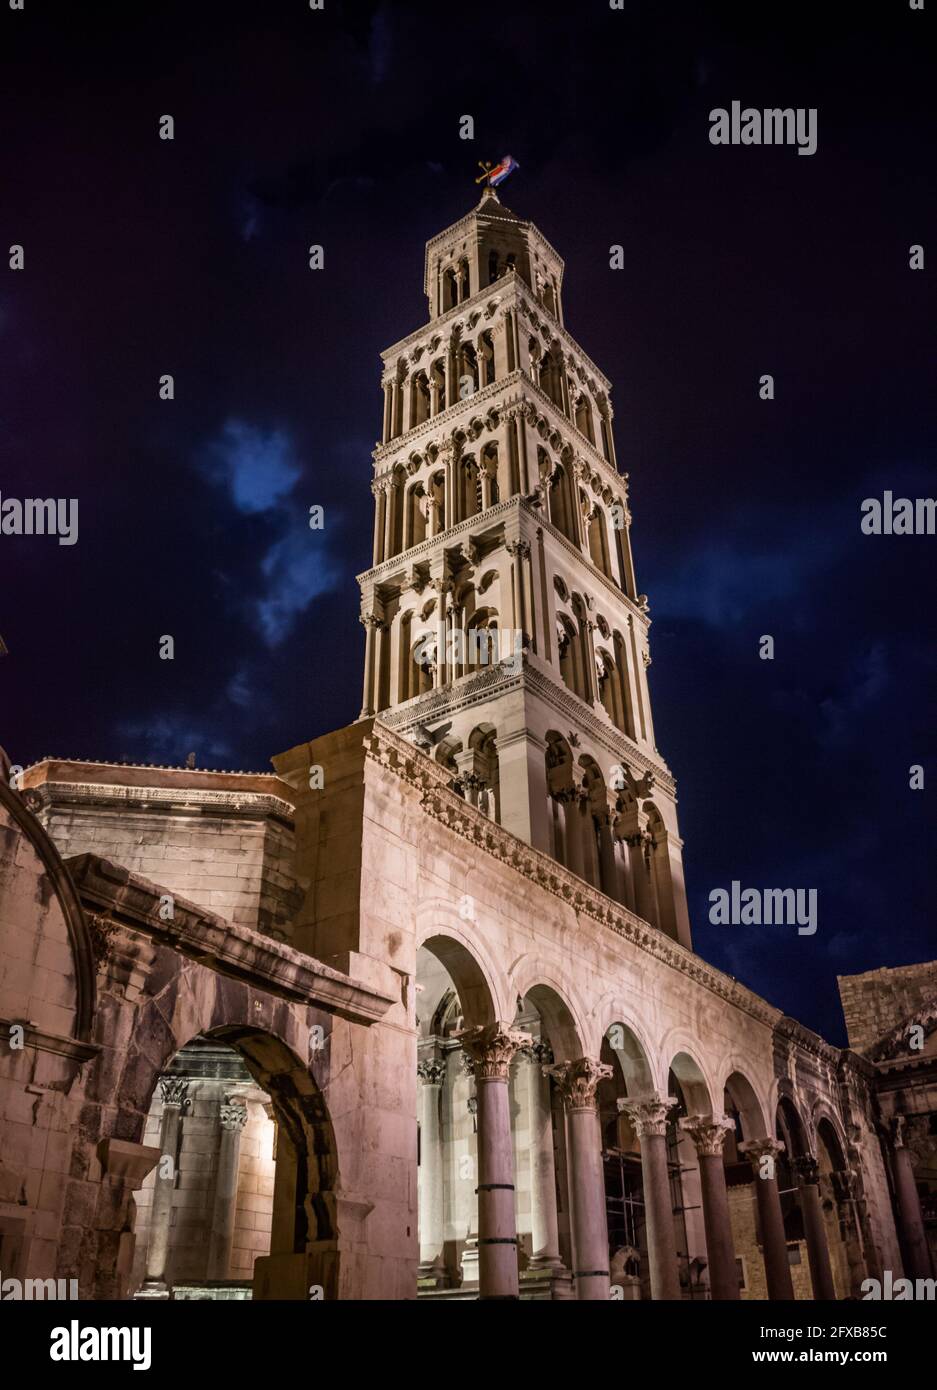 El campanario de la Catedral de San Dominio con vistas al Palacio de Diocleciano en el casco antiguo de Split, la segunda ciudad más grande de Croacia Foto de stock